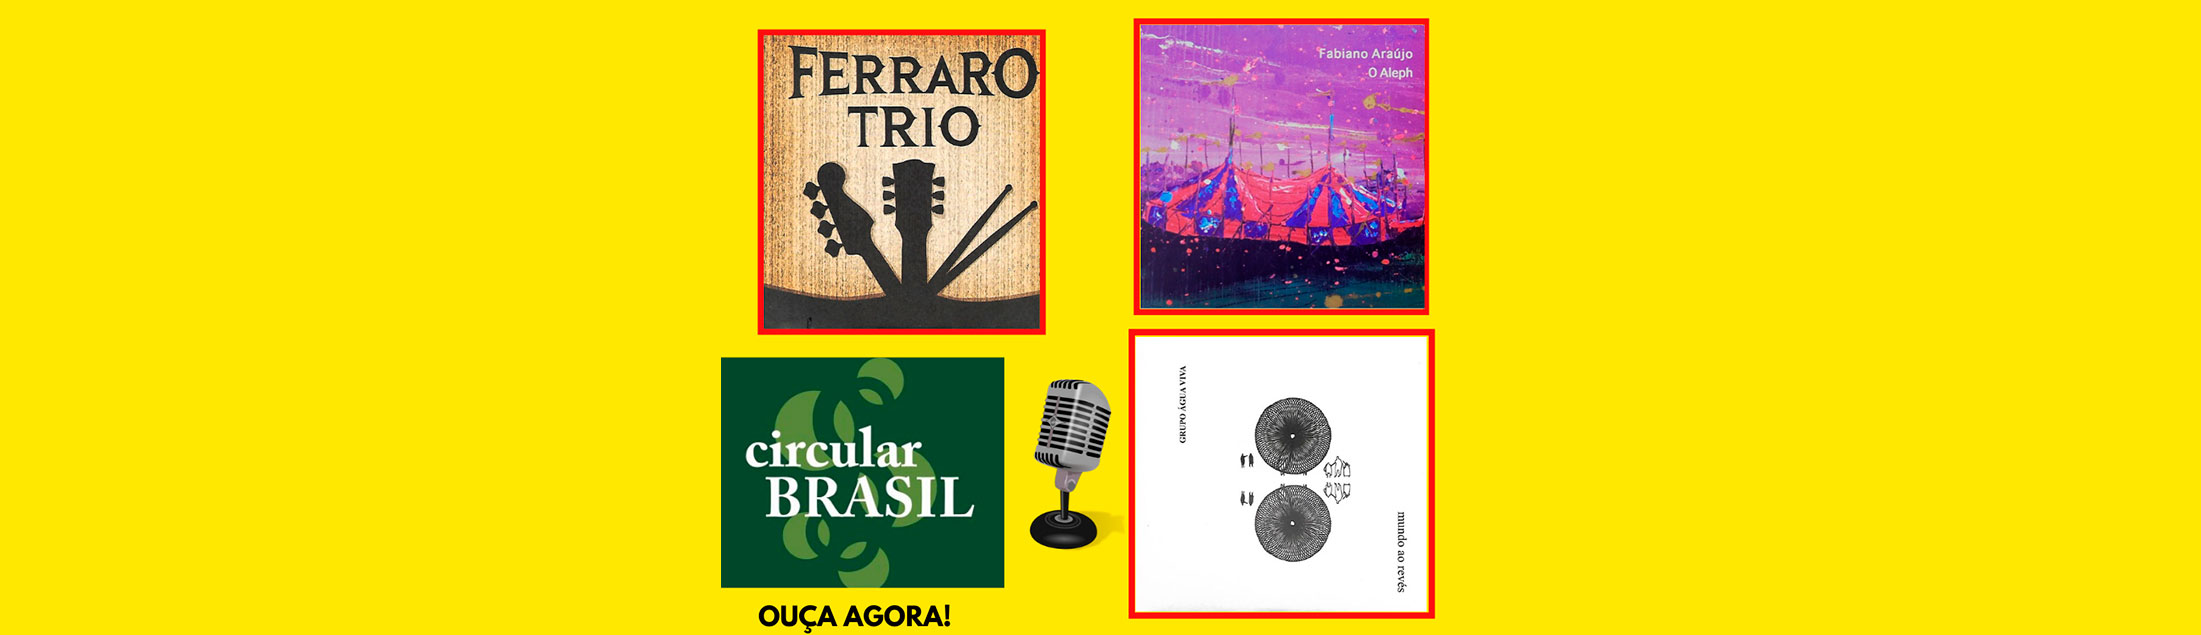 Conheça o suave rock instrumental do Ferraro Trio, a música de Fabiano Araújo e do Grupo Água Viva